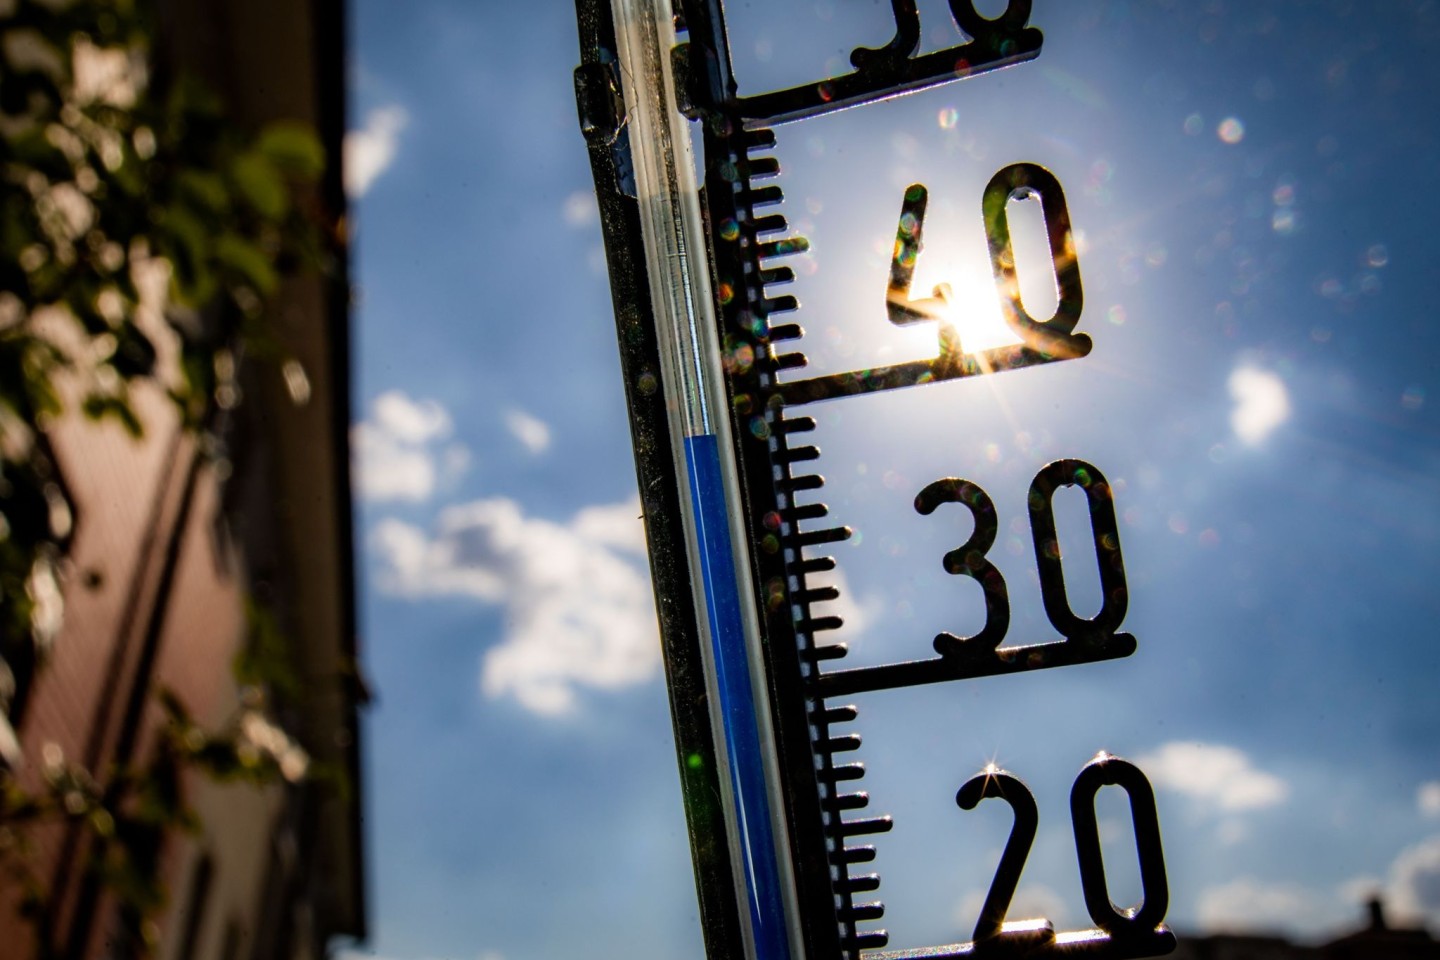 Hohe Sommertemperaturen haben einer Studie zufolge in den Jahren 2018 bis 2020 jeweils zu Tausenden hitzebedingter Sterbefälle in Deutschland geführt.